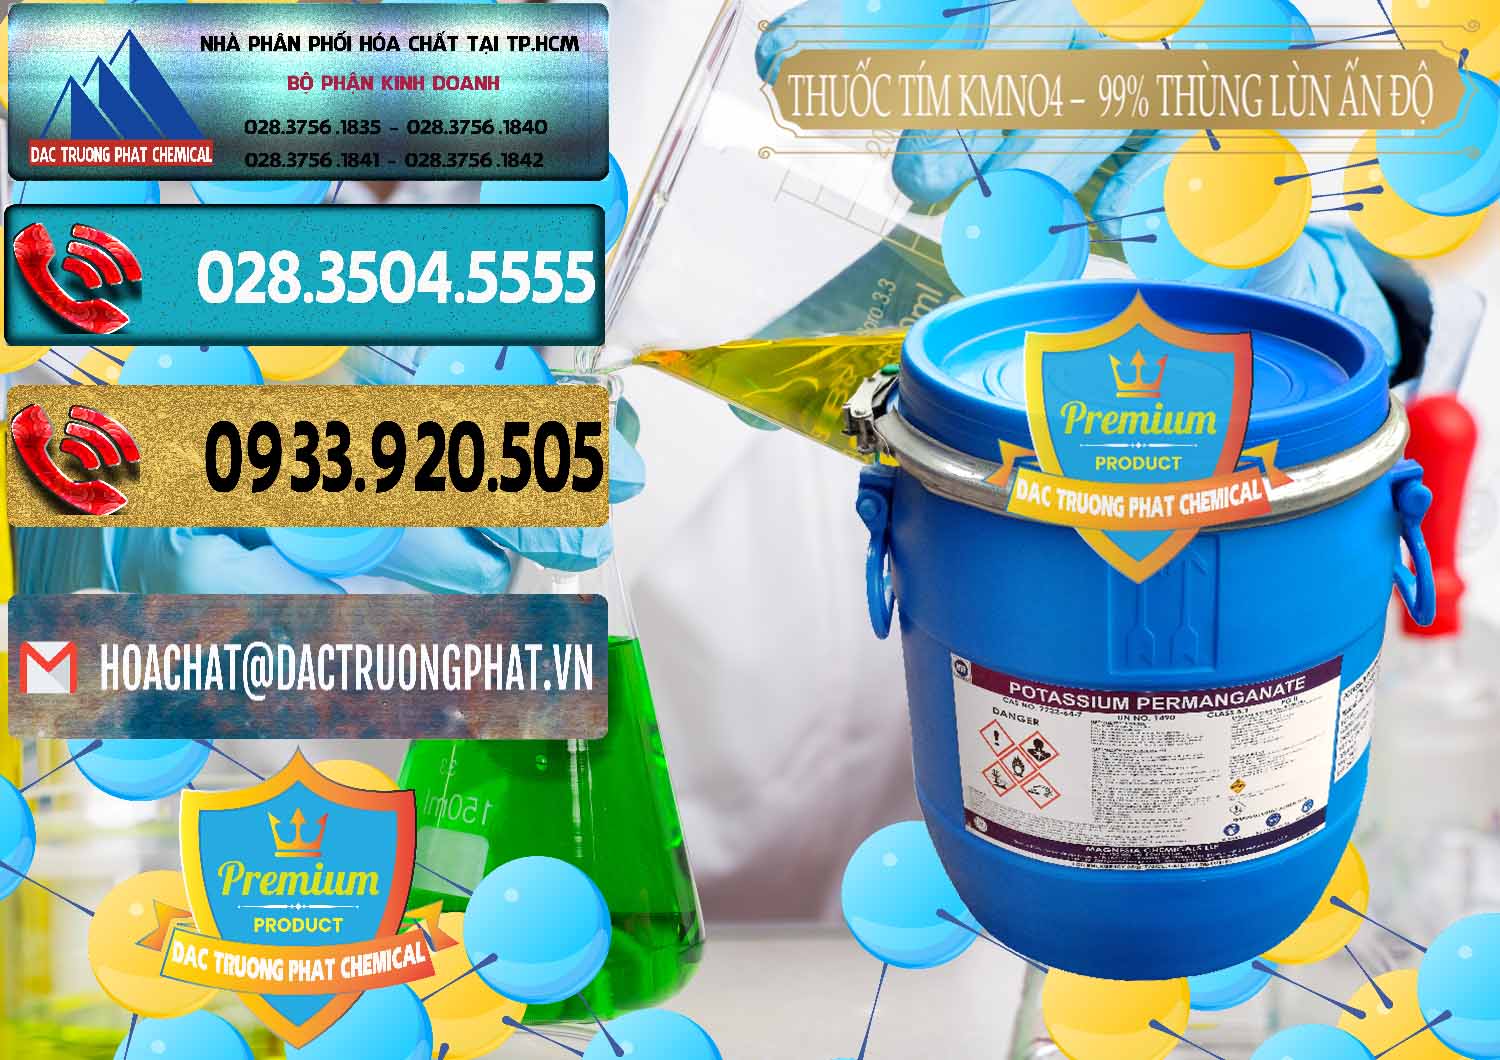 Công ty chuyên bán _ cung cấp Thuốc Tím - KMNO4 Thùng Lùn 99% Magnesia Chemicals Ấn Độ India - 0165 - Chuyên phân phối ( cung cấp ) hóa chất tại TP.HCM - hoachatdetnhuom.com